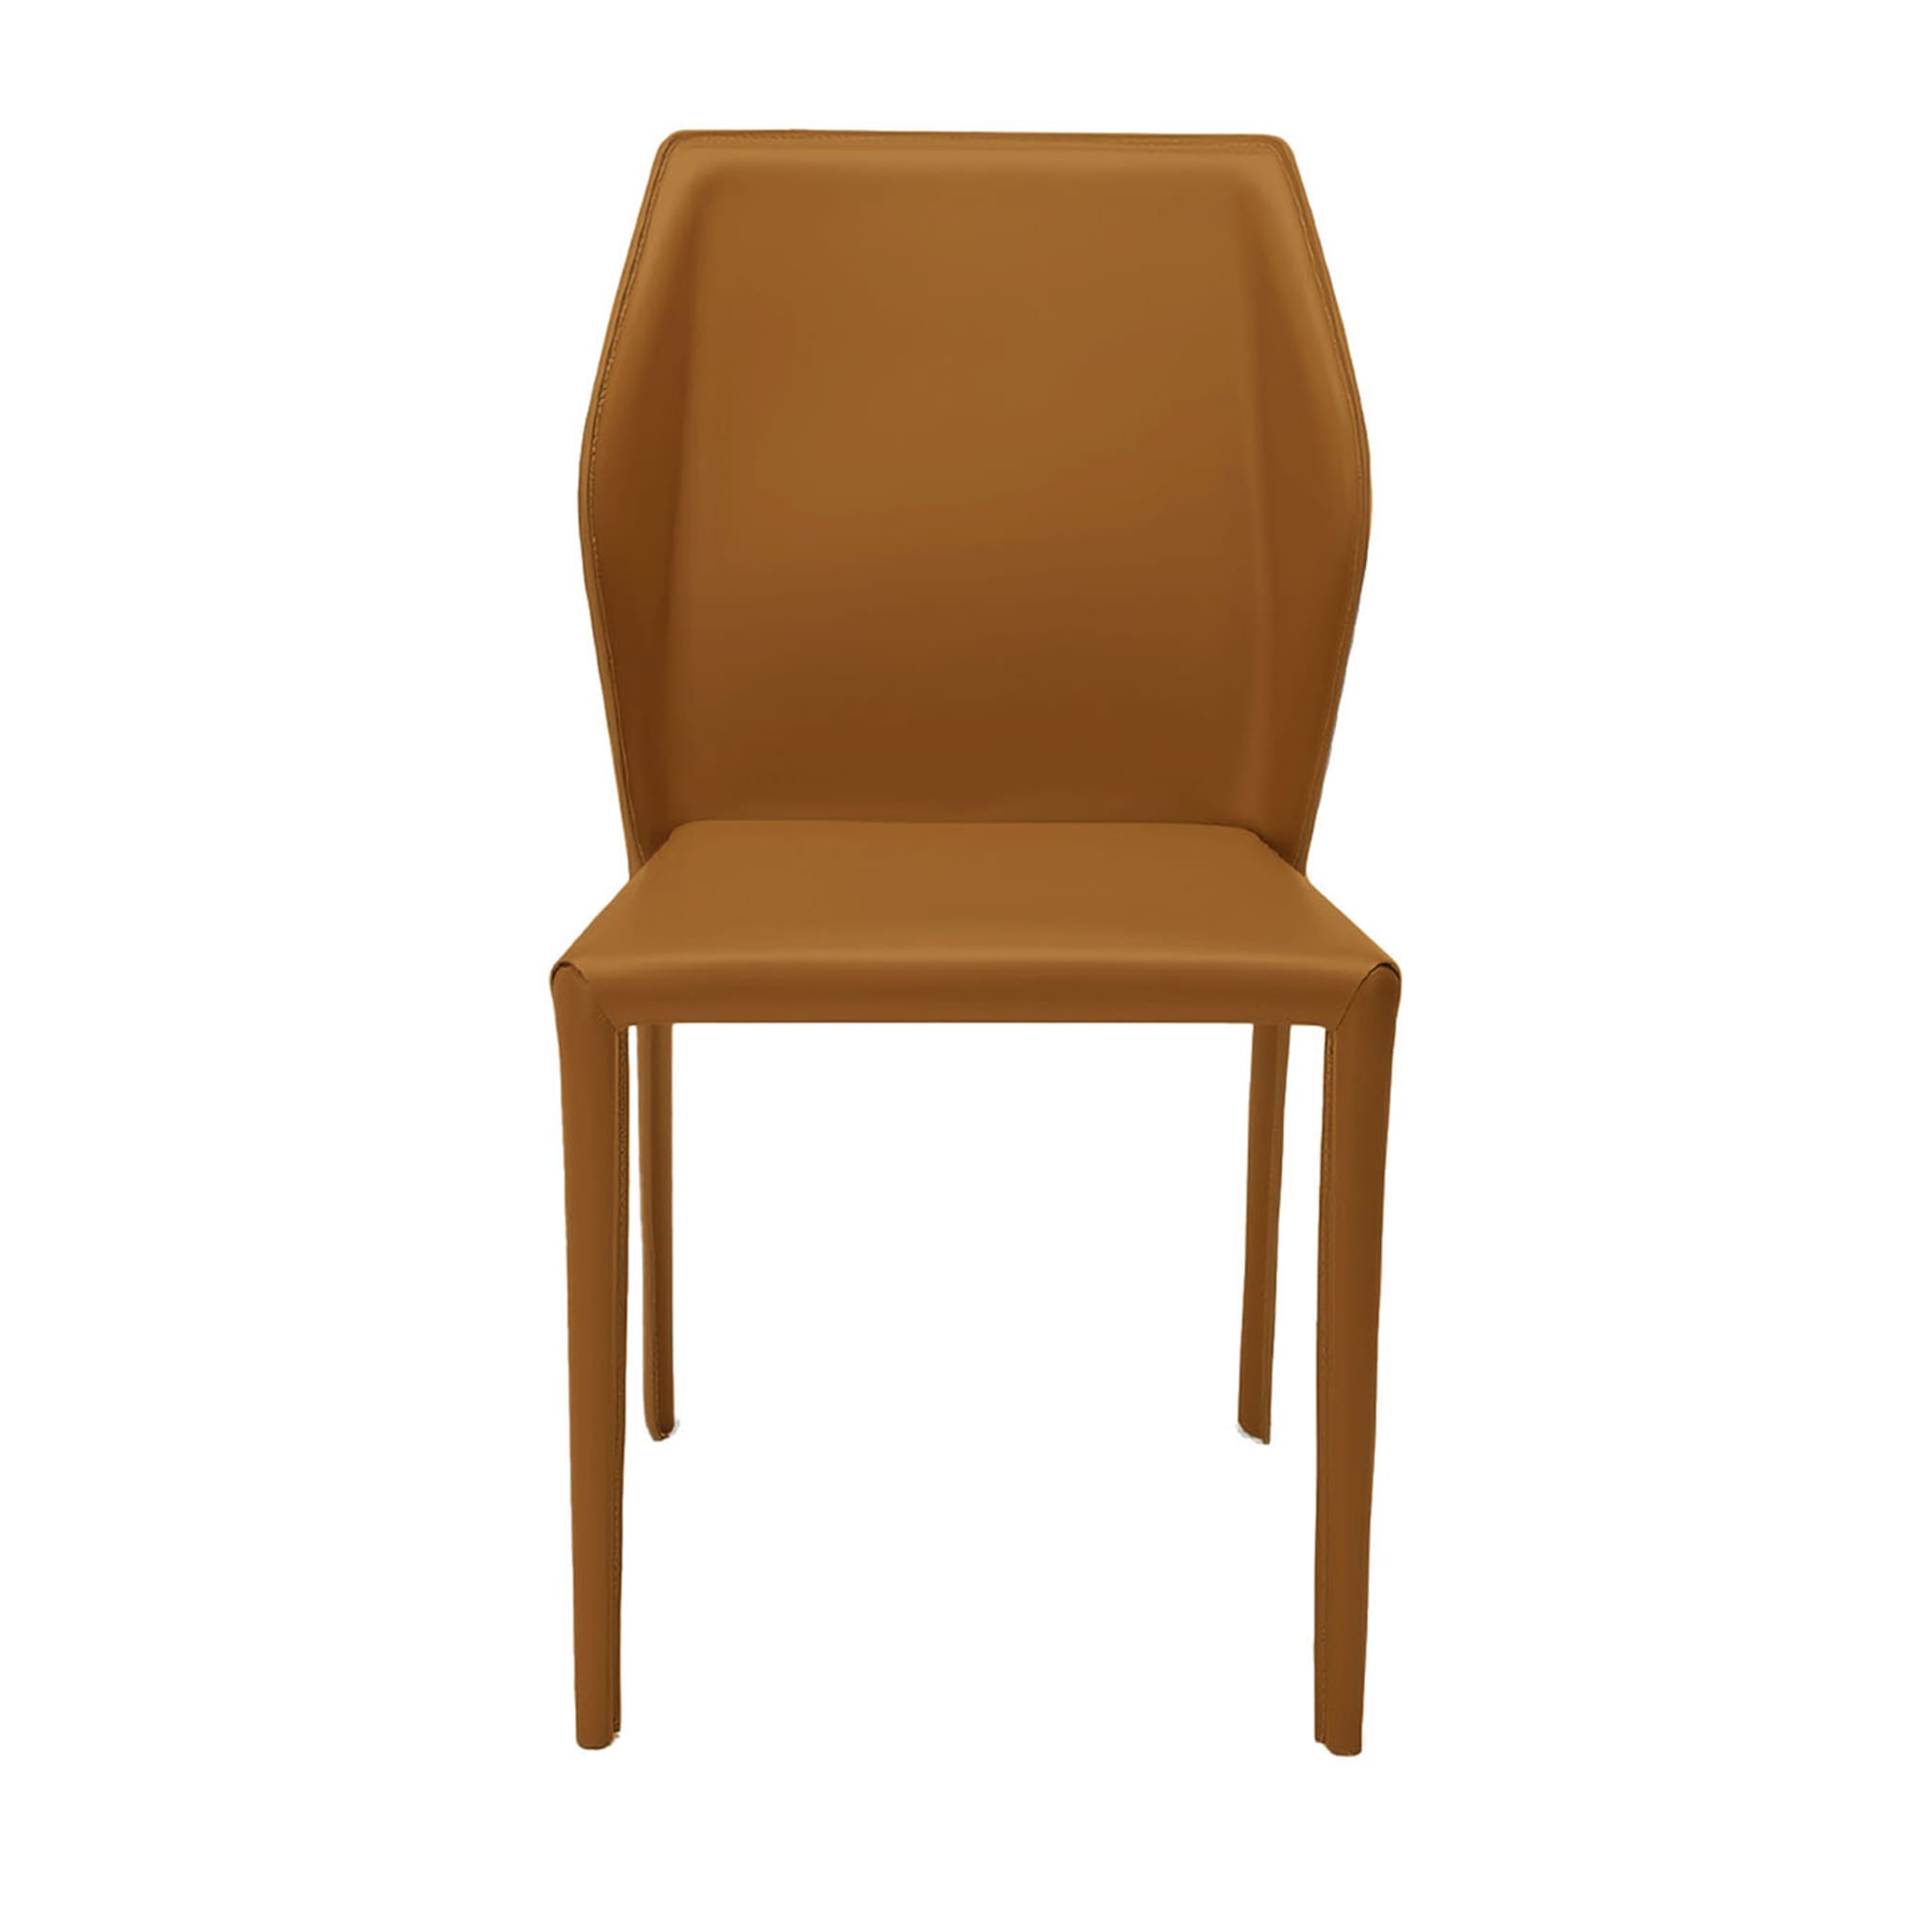 Fold Chair #1 - Main view